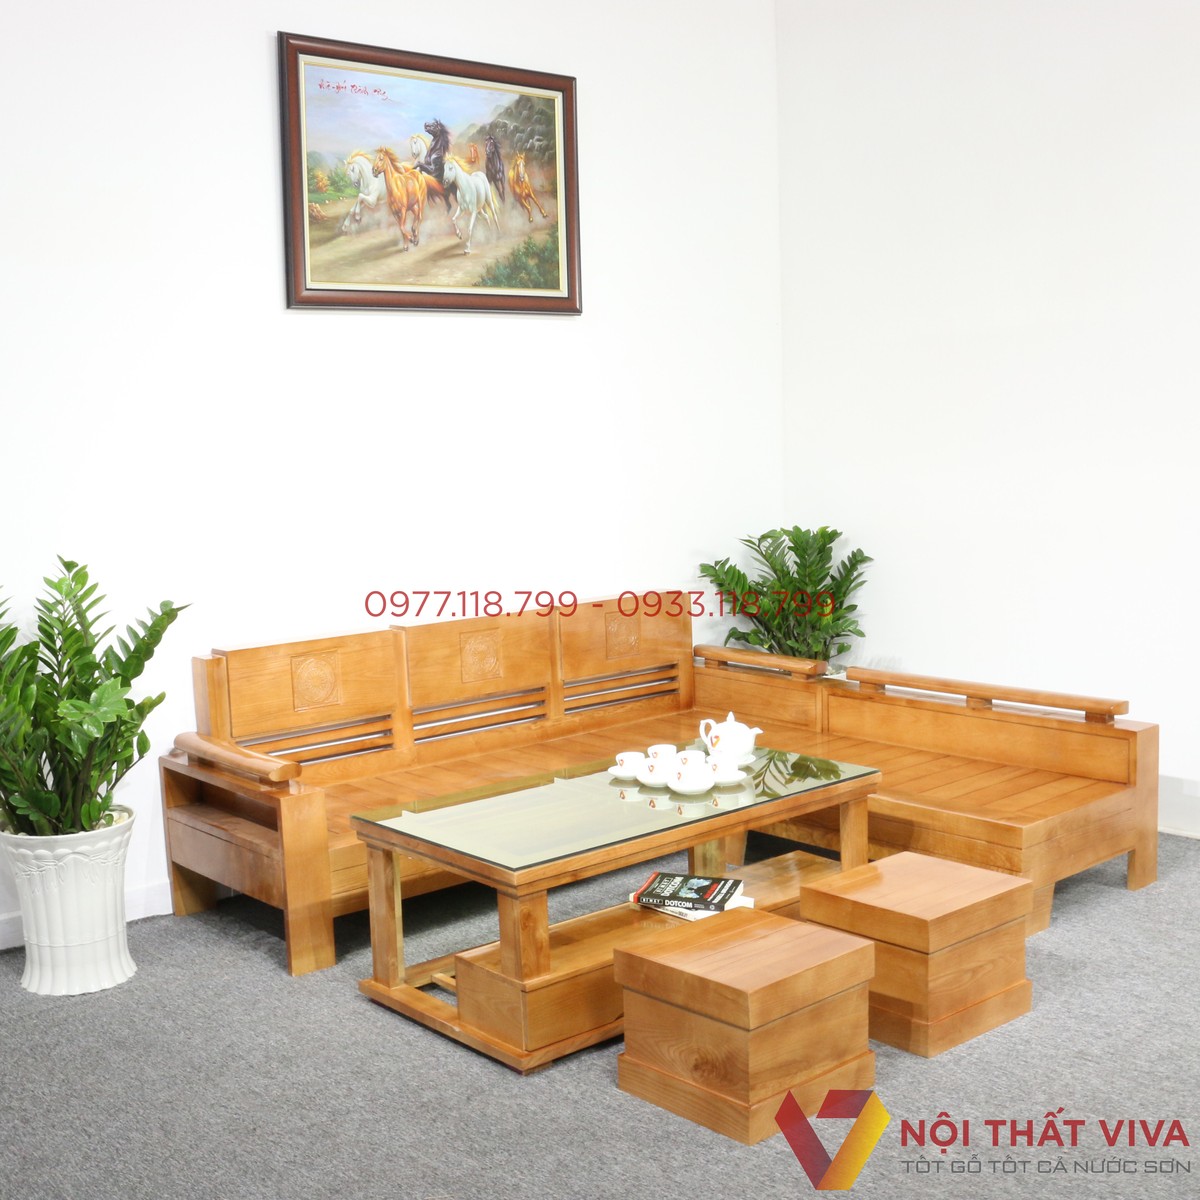 Ghế sofa gỗ giá rẻ là một trong những sản phẩm nội thất được yêu thích nhất hiện nay. Với chất liệu gỗ cao cấp, độ bền cao, đa dạng kiểu dáng và tính tiện ích cao, Ghế Sofa Gỗ giá rẻ là một sự lựa chọn tuyệt vời để trang trí không gian sống của bạn mà không phải lo về giá thành.